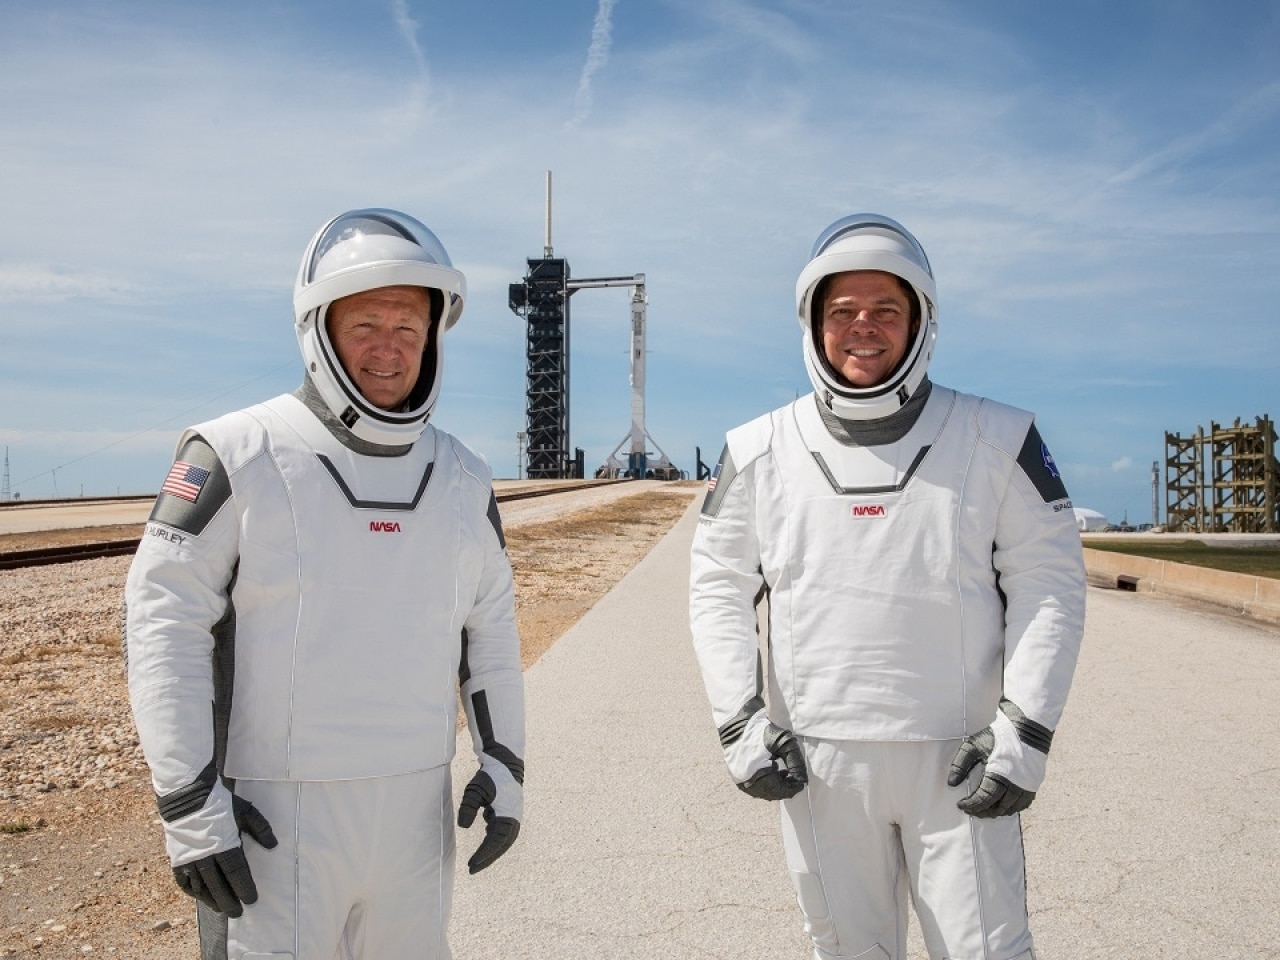 Les astronautes Doug Hurley et Bob Behnken se tiennent devant le site de lancement dans une combinaison spatiale signée SpaceX.